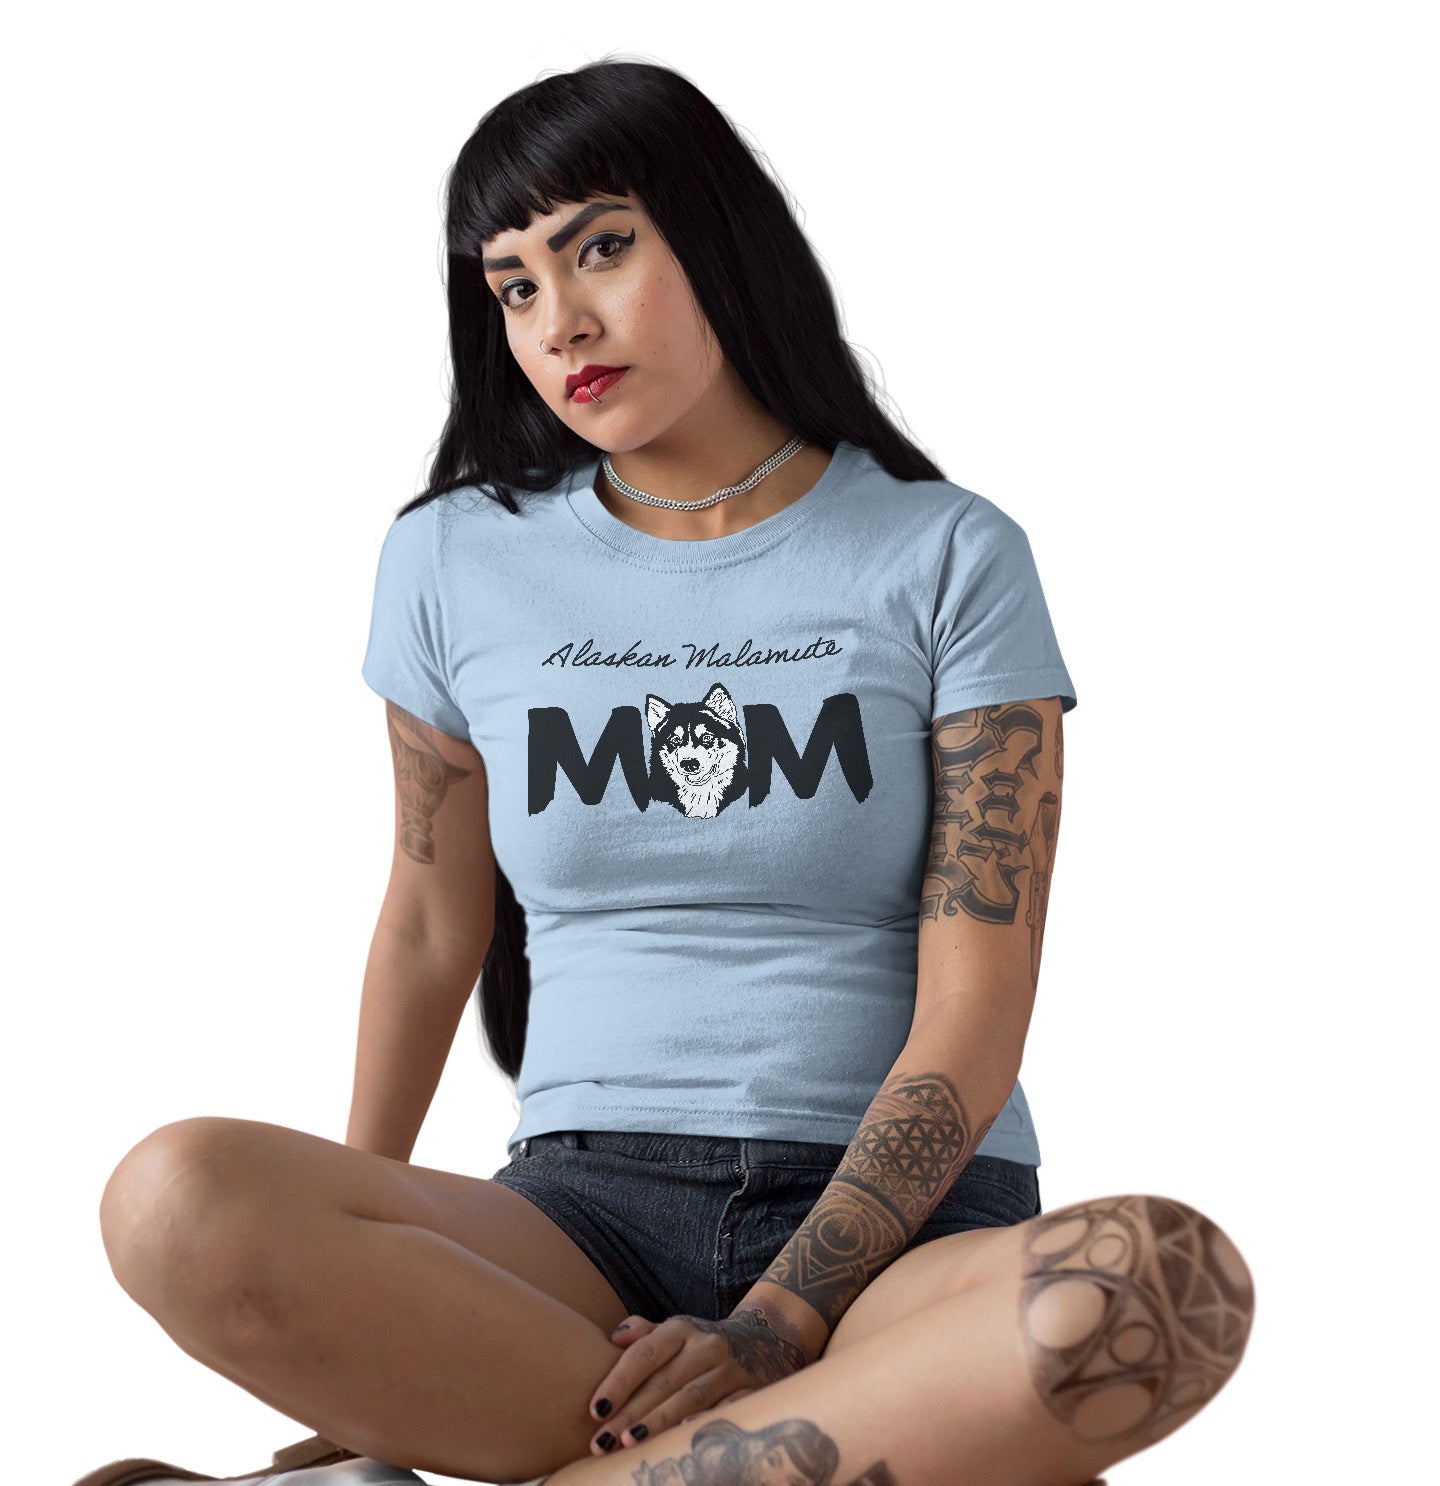 Alaskan Malamute Breed Mom - Women's Fitted T-Shirt